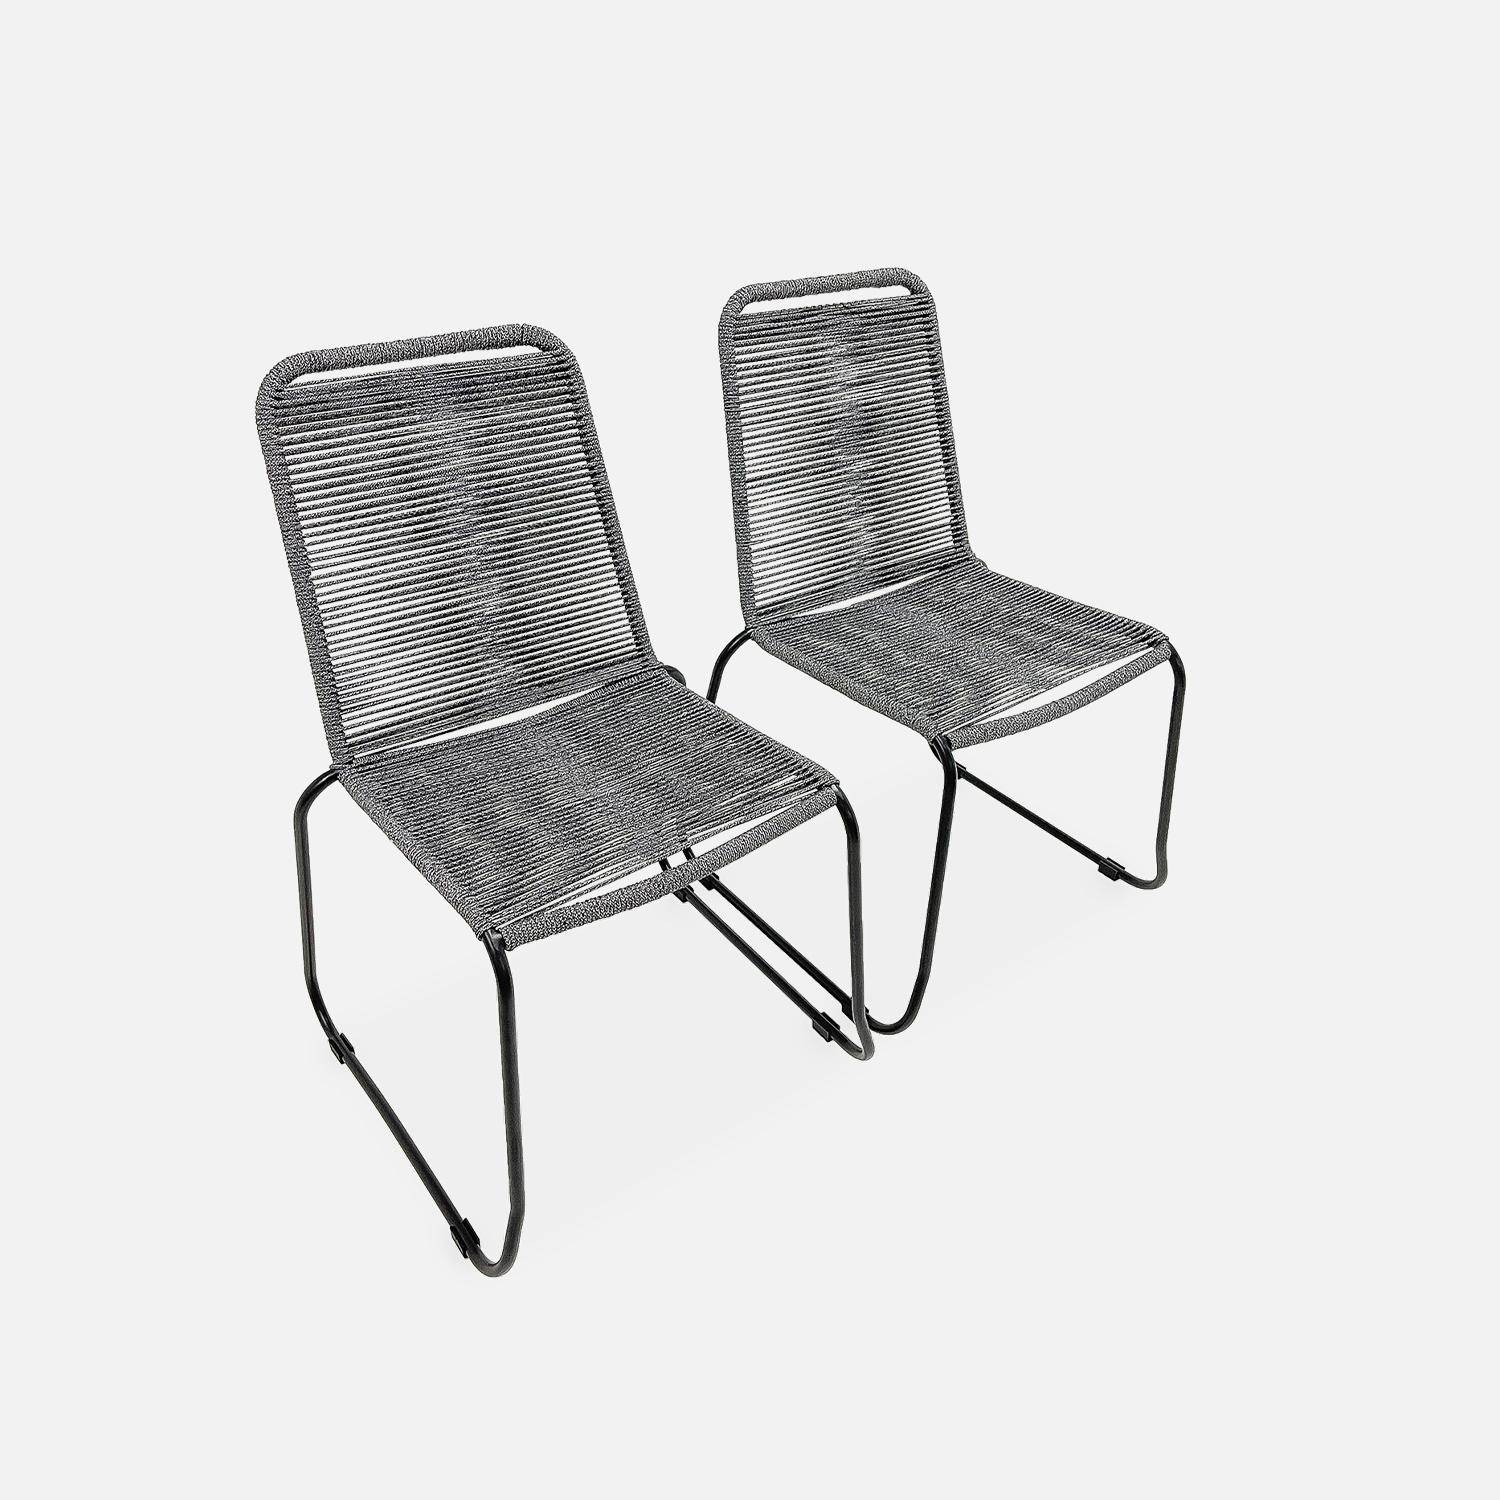 Lote de 2 sillas de jardín de cuerda BRASILIA, gris jaspeado, apilables, para exterior,sweeek,Photo4